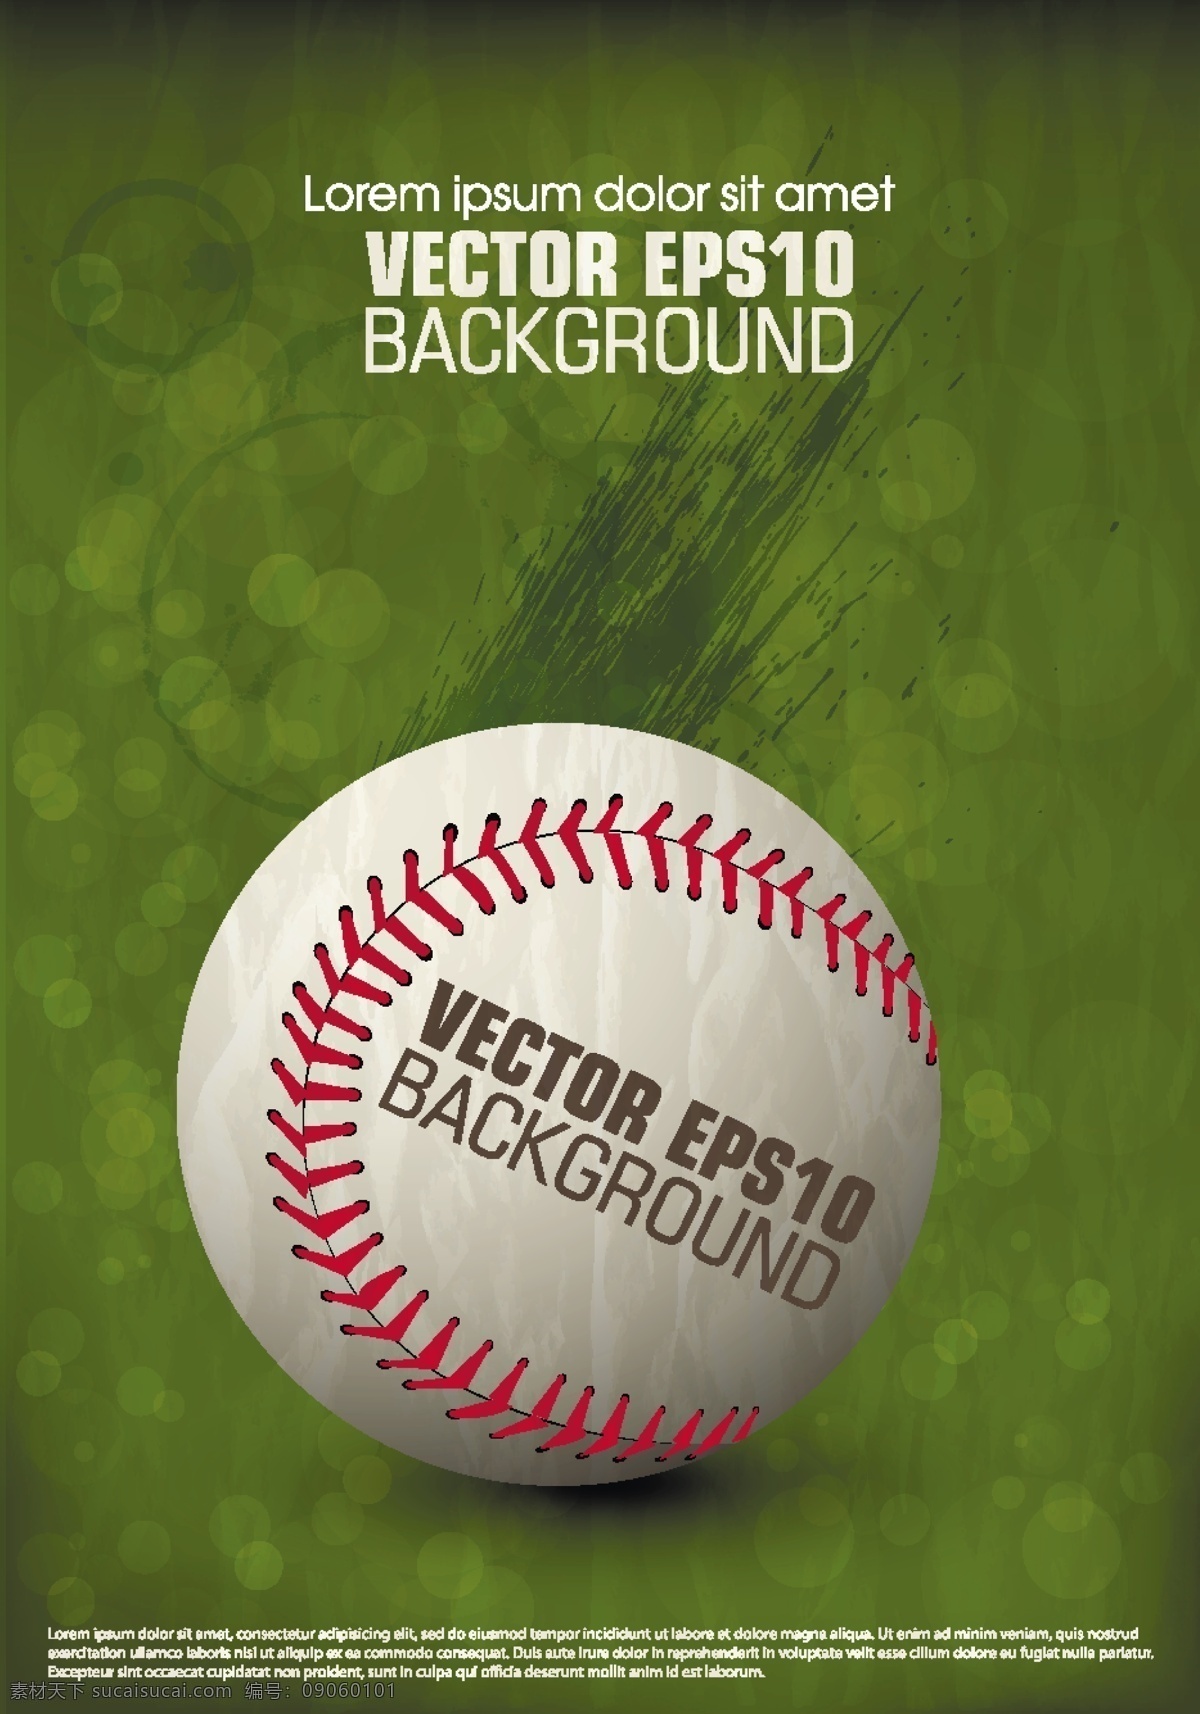 棒球 体育运动 文化艺术 运动 棒球矢量素材 棒球模板下载 棒球场 球衣 运动装备 矢量 矢量图 日常生活